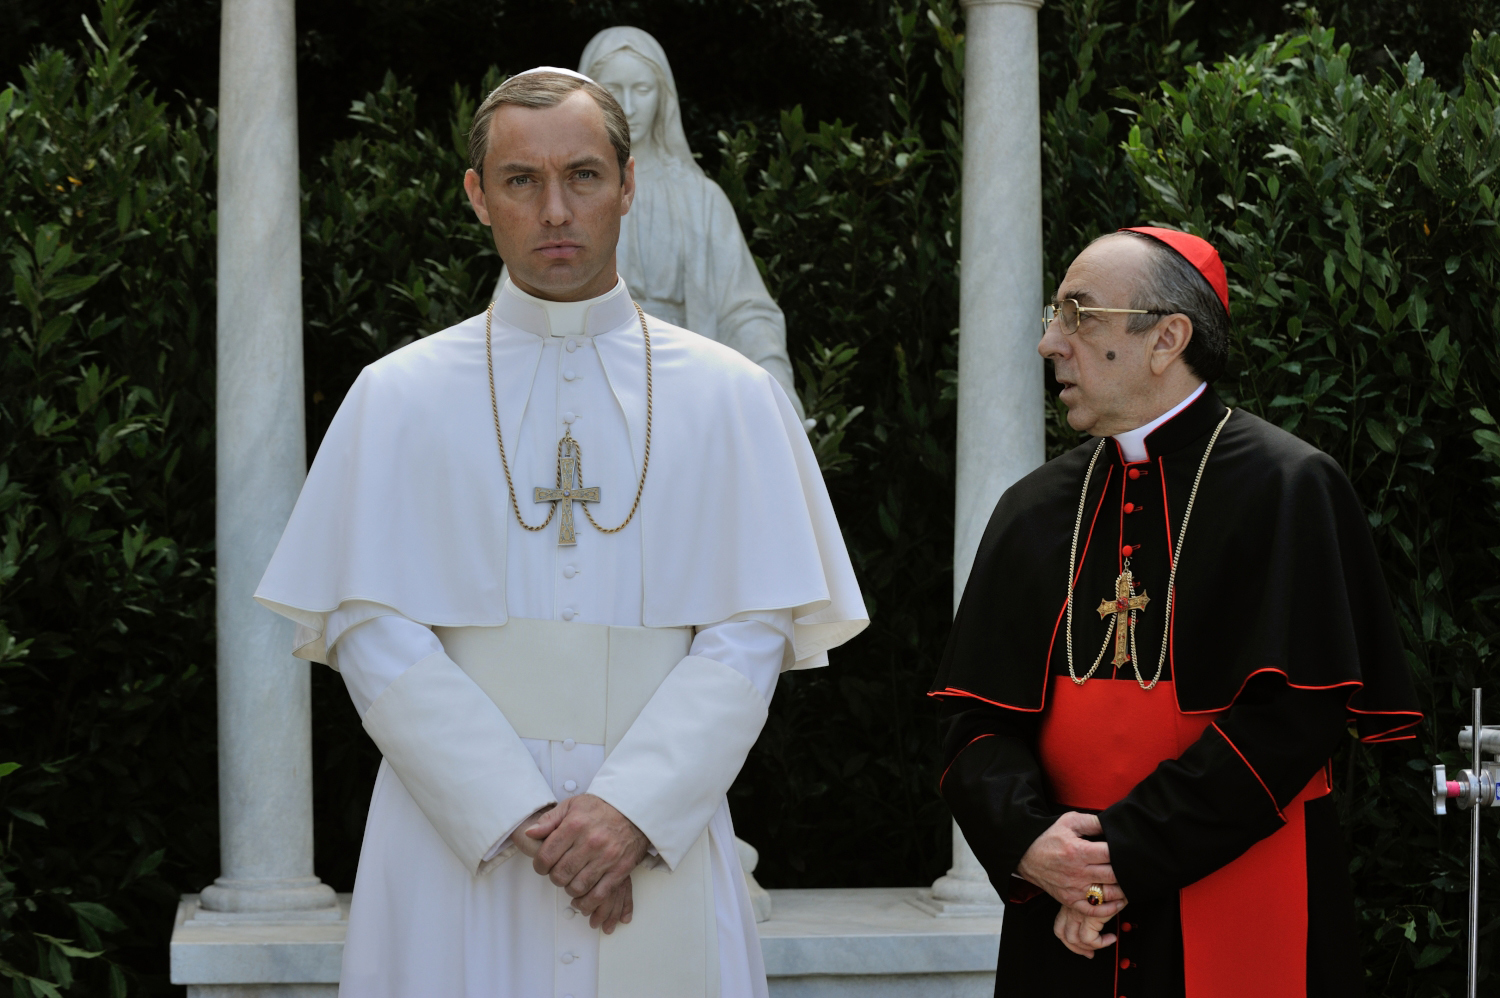 Cardinal Voiello